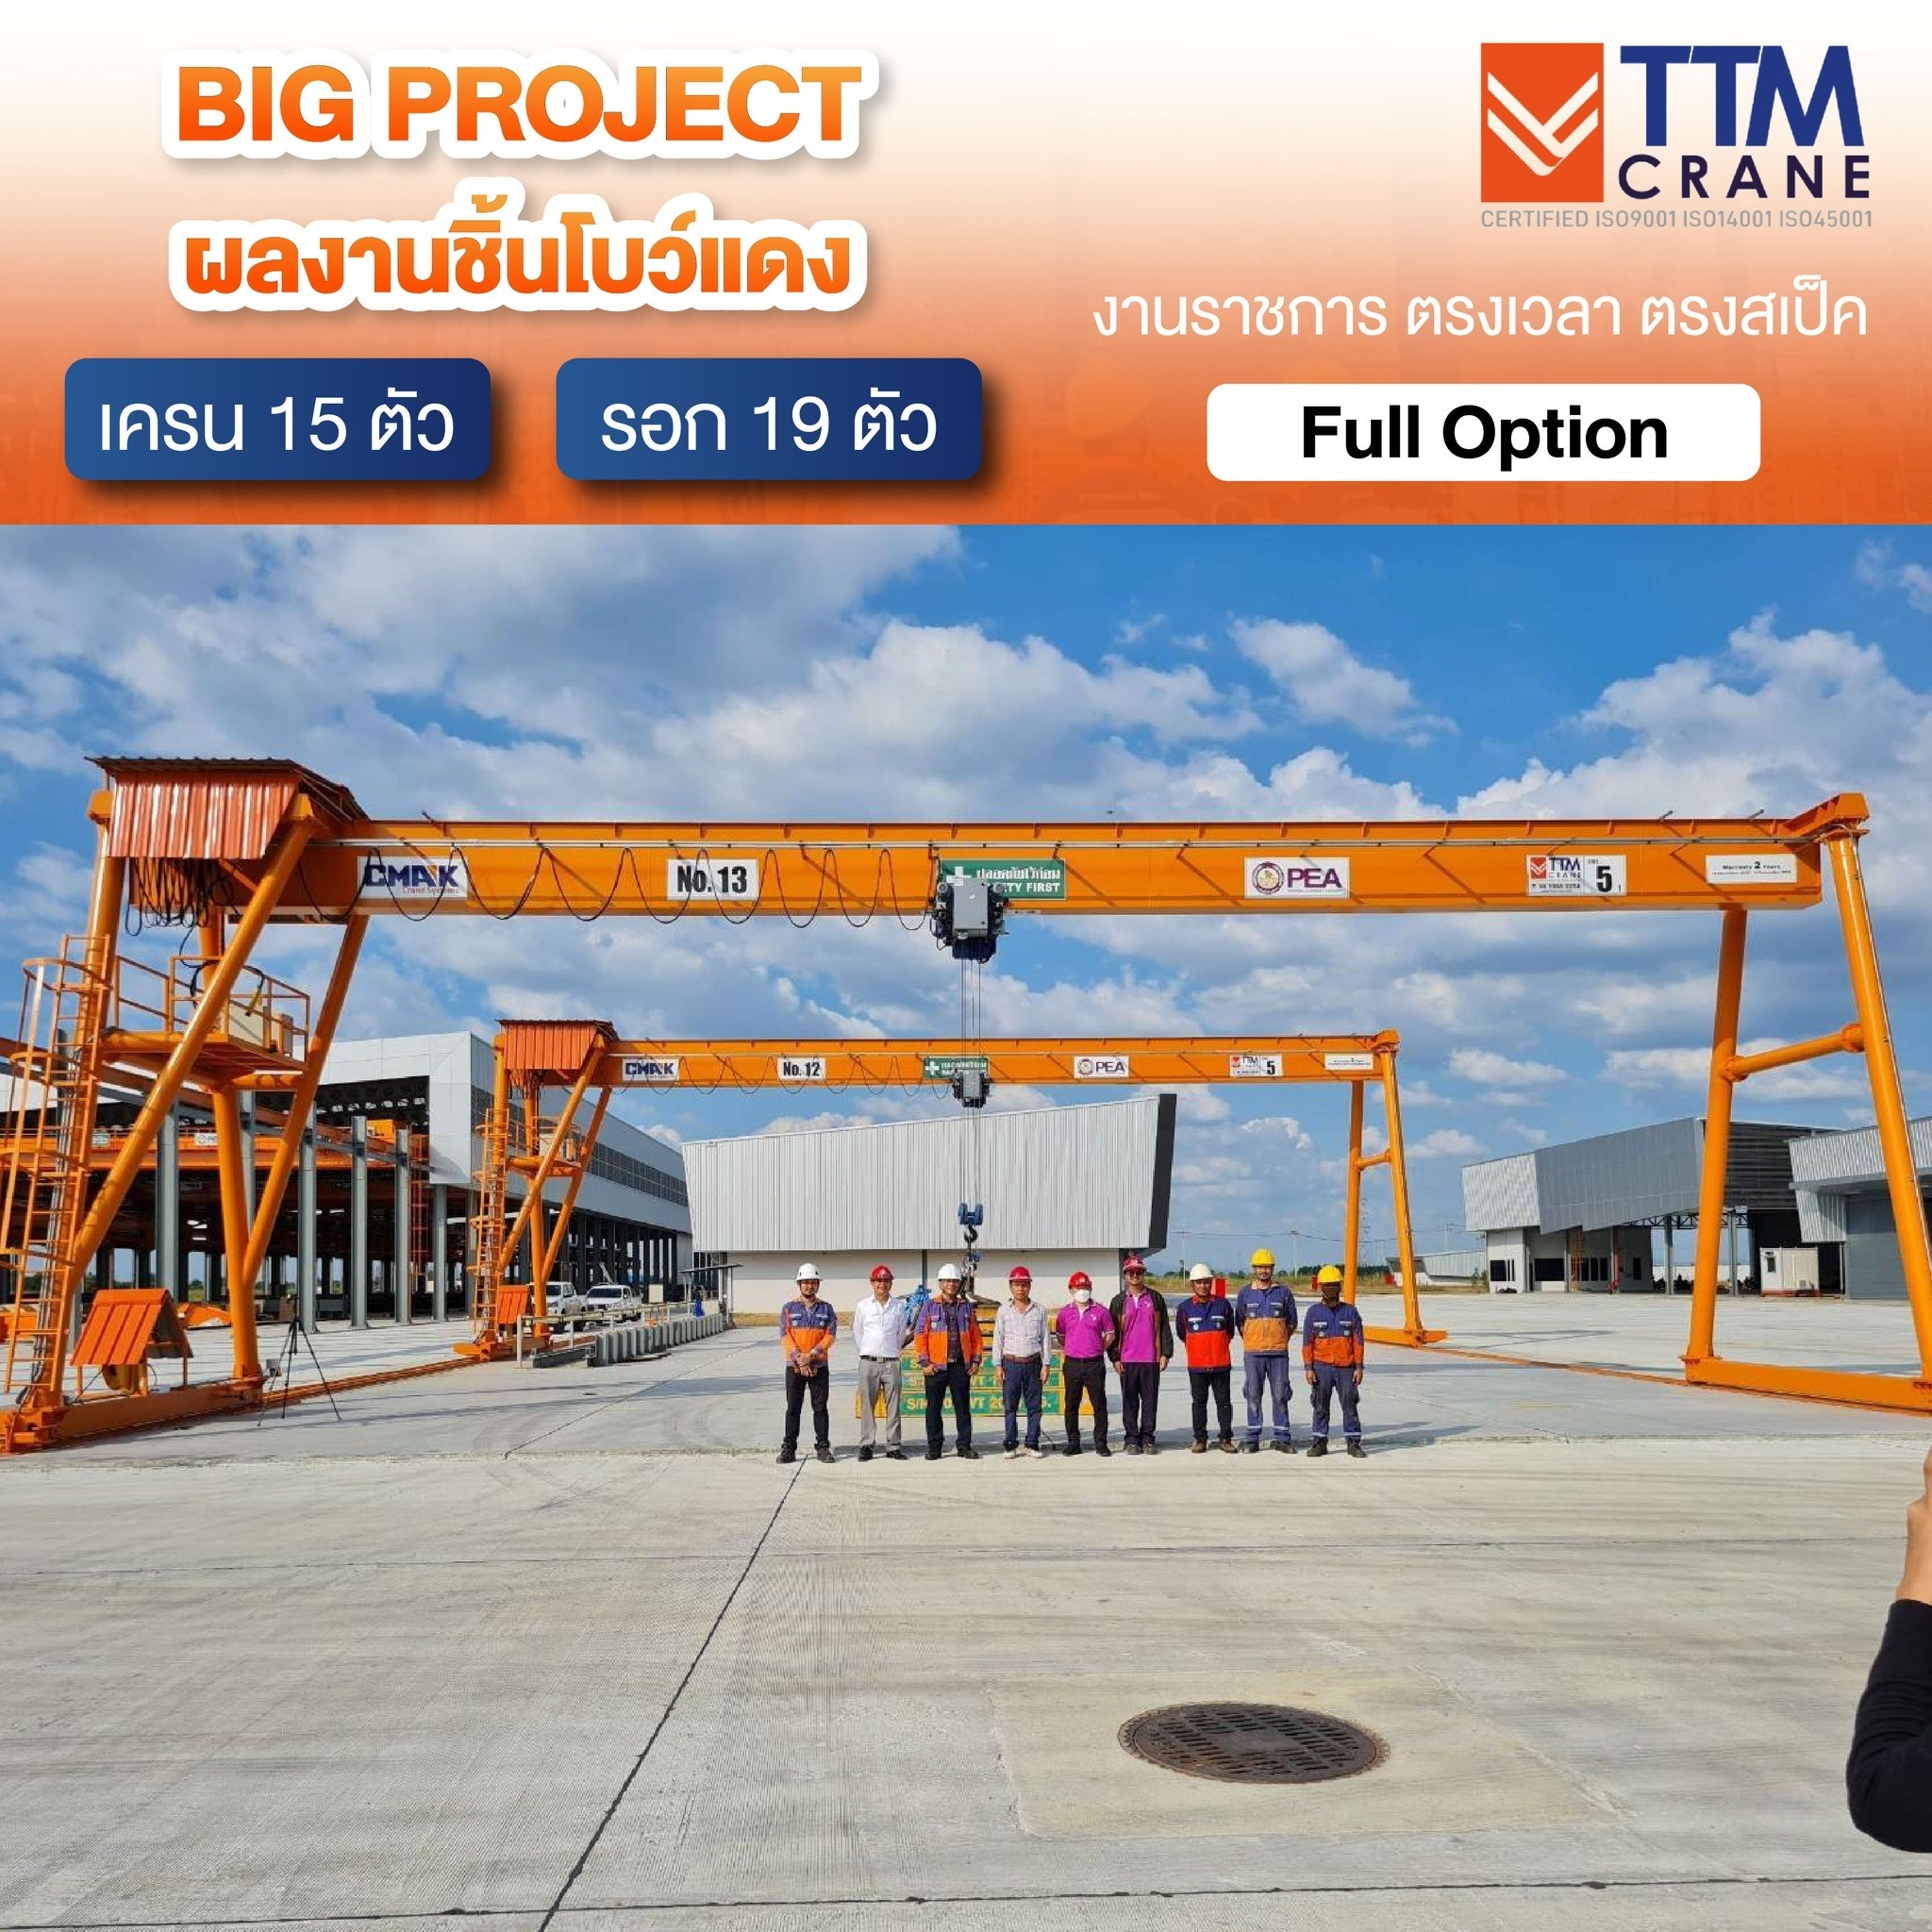 สุดยอด Big project ผลงานชิ้นโบว์แดงล่าสุด TTM Crane x การไฟฟ้าส่วนภูมิภาค โรงงานผลิตภัณฑ์คอนกรีต